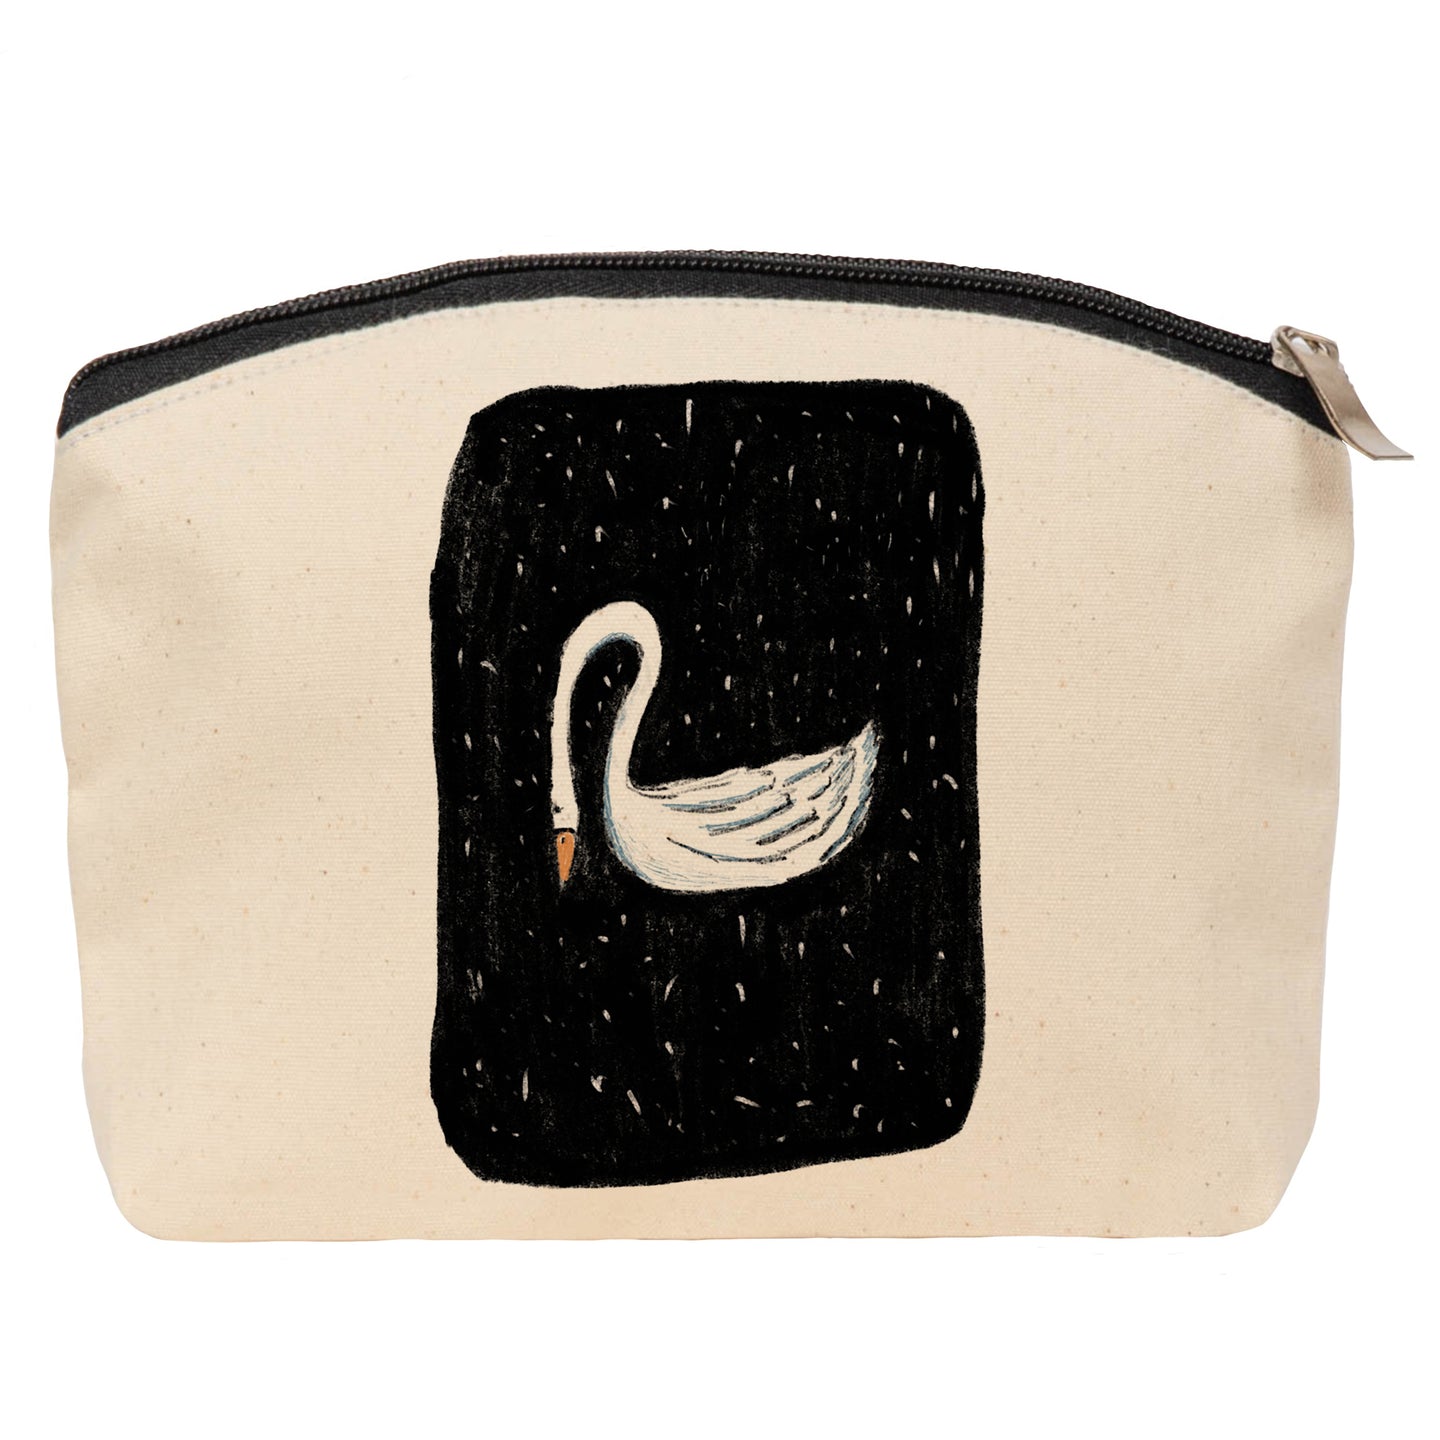 Swan cosmetic bag